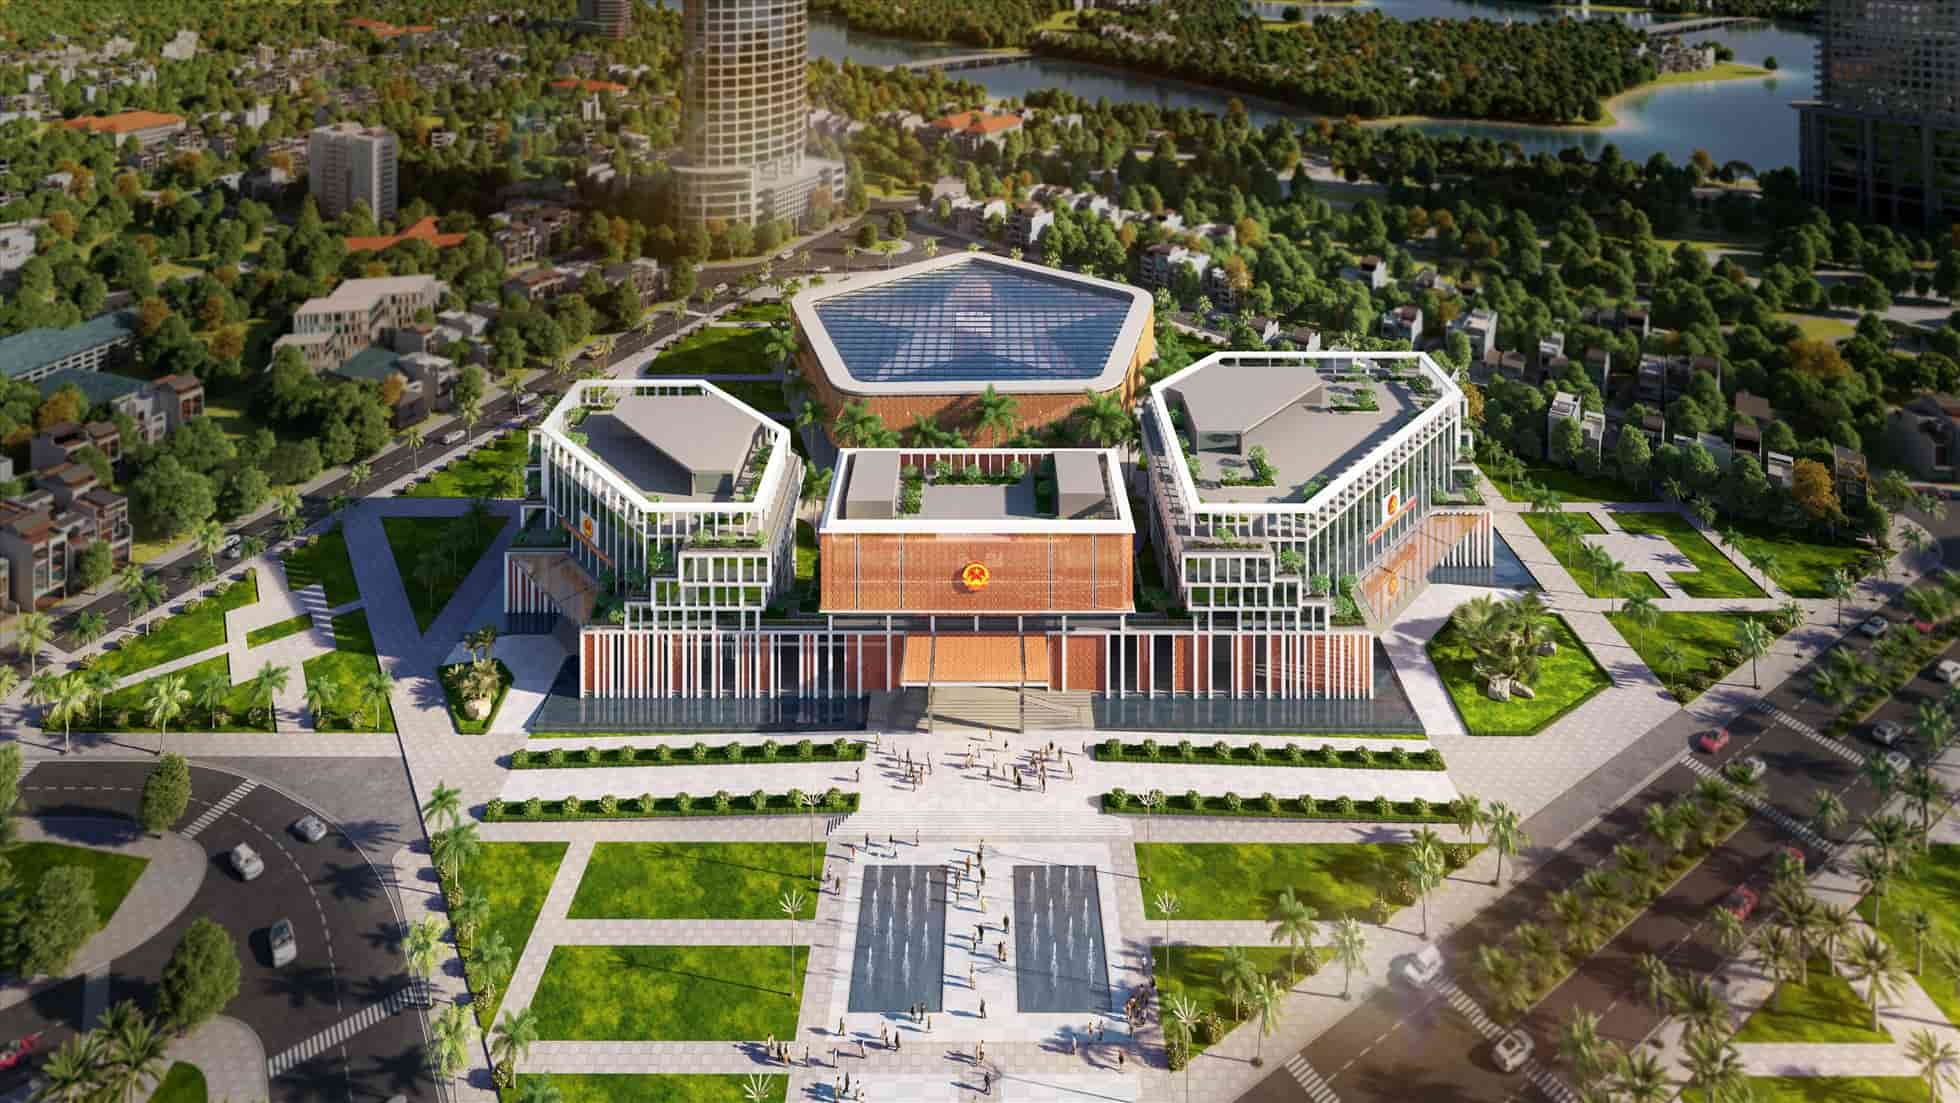 Dự án tòa hành chính mới của tỉnh Khánh Hòa được xây trên khu đất 23.259 m2 tại số 1 đường Trần Phú, TP Nha Trang. Ảnh: Huni Architectes